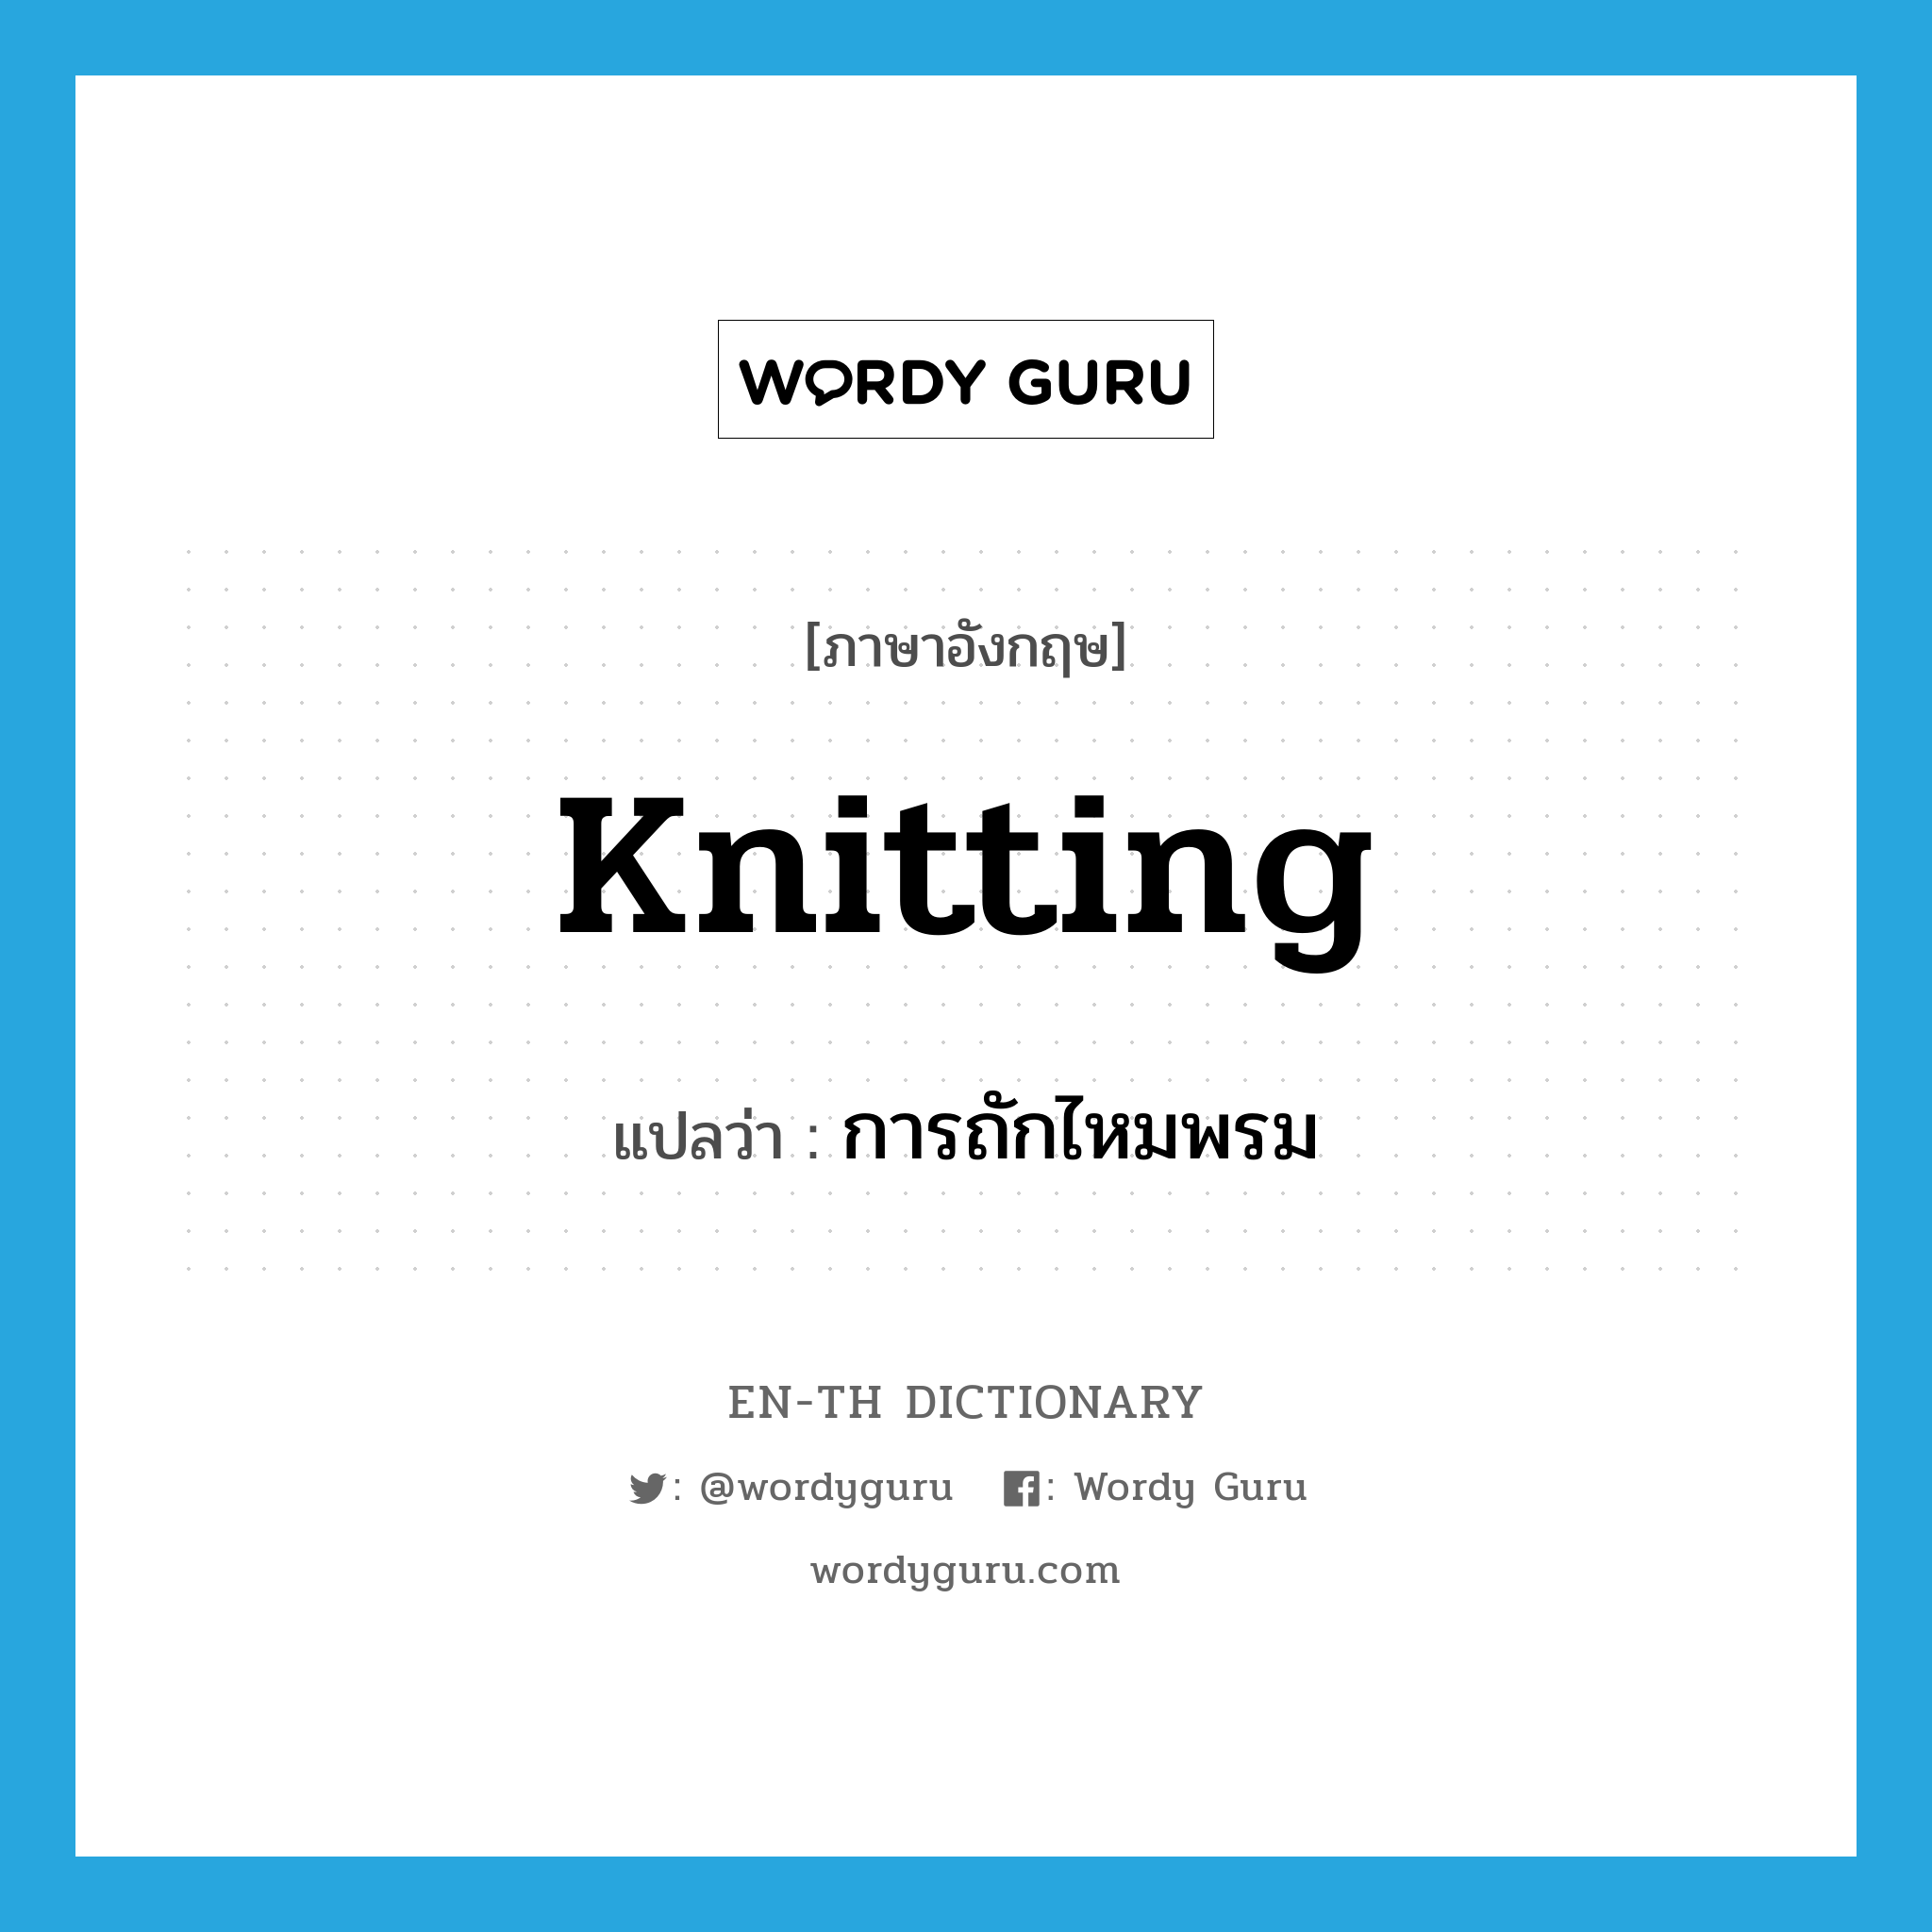 การถักไหมพรม ภาษาอังกฤษ?, คำศัพท์ภาษาอังกฤษ การถักไหมพรม แปลว่า knitting ประเภท N หมวด N